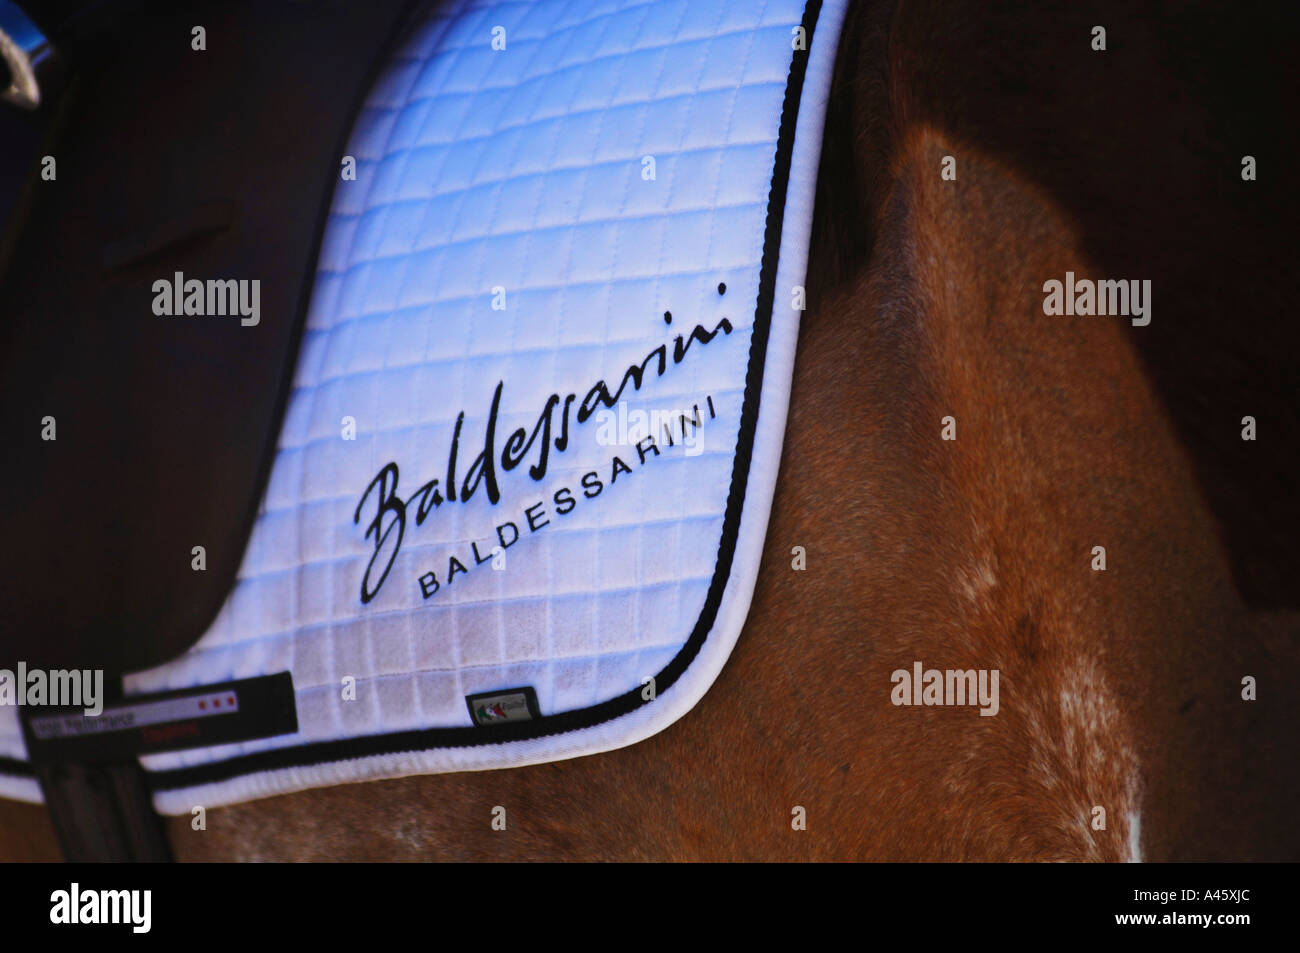 Baldessarini Name on a Saddlecloth - Baldessarini Snow Arena Polo World Cup Kitzbuehel 2006 Stock Photo